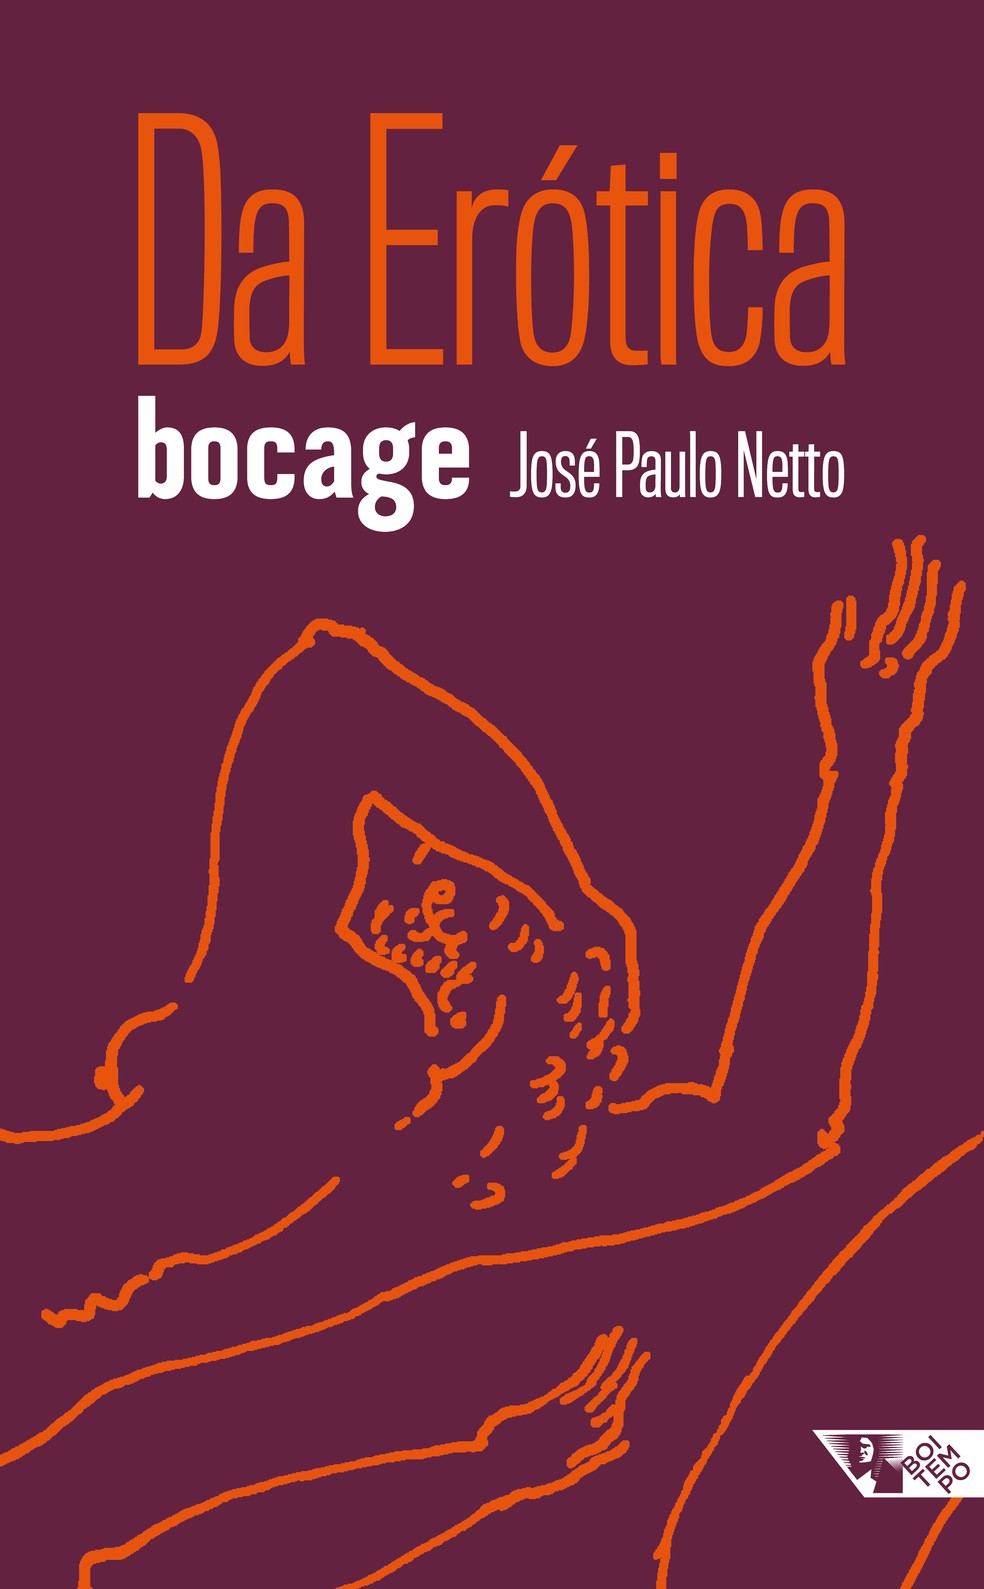 Capa de "Da erótica", antologia poética de Bocage organizada por José Paulo Netto — Foto: Divulgação